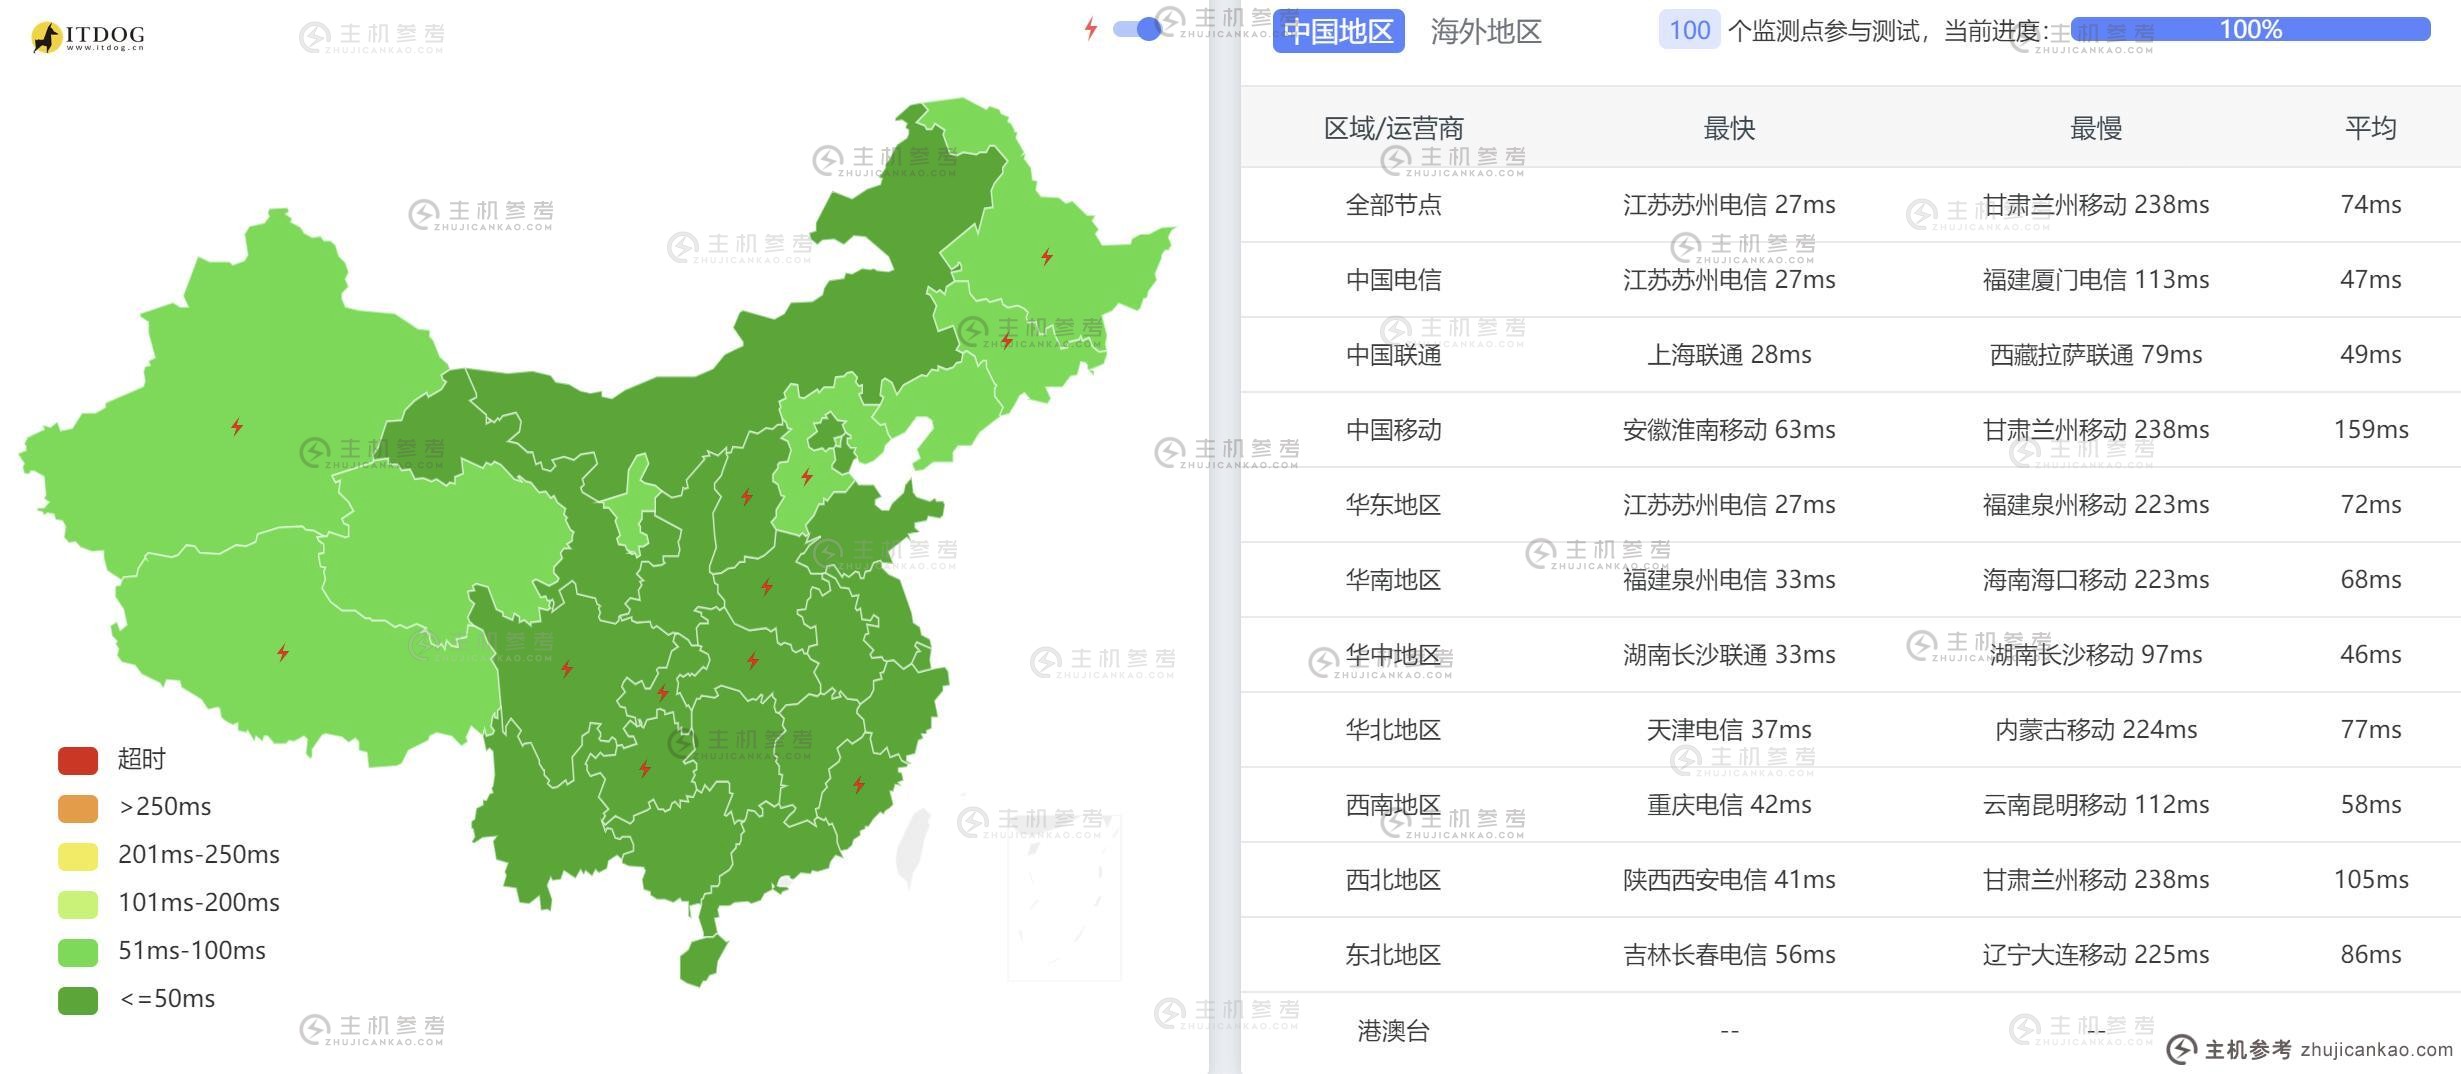 智贸云台湾VPS测评 - 全国三网Ping平均延迟测试